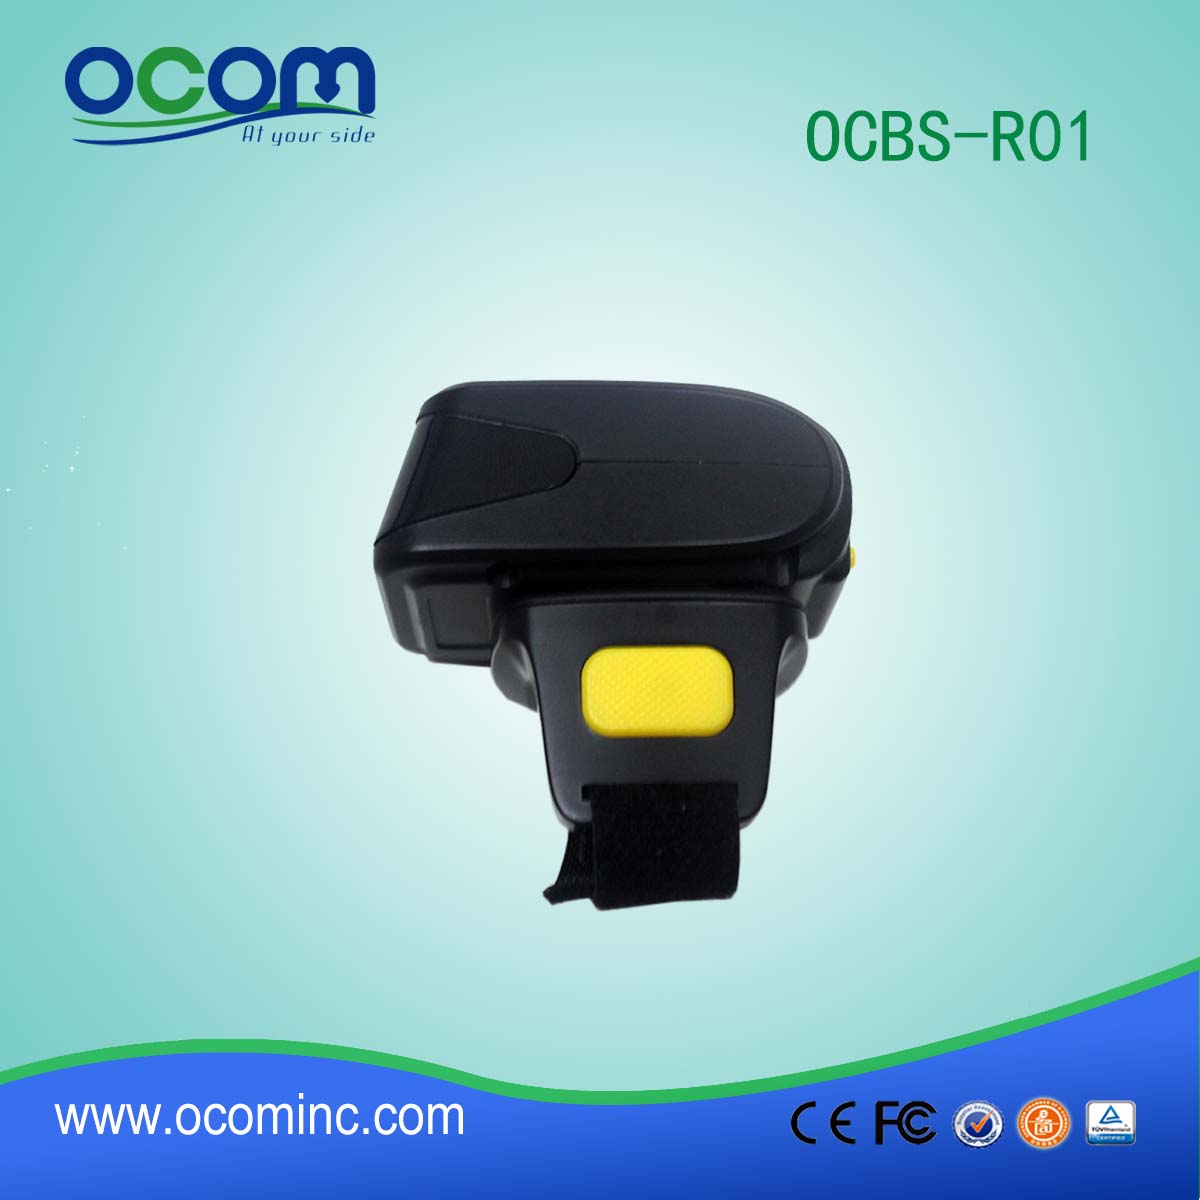 OCBs-R01 1D scanner de código de barras sem fio Bluetooth